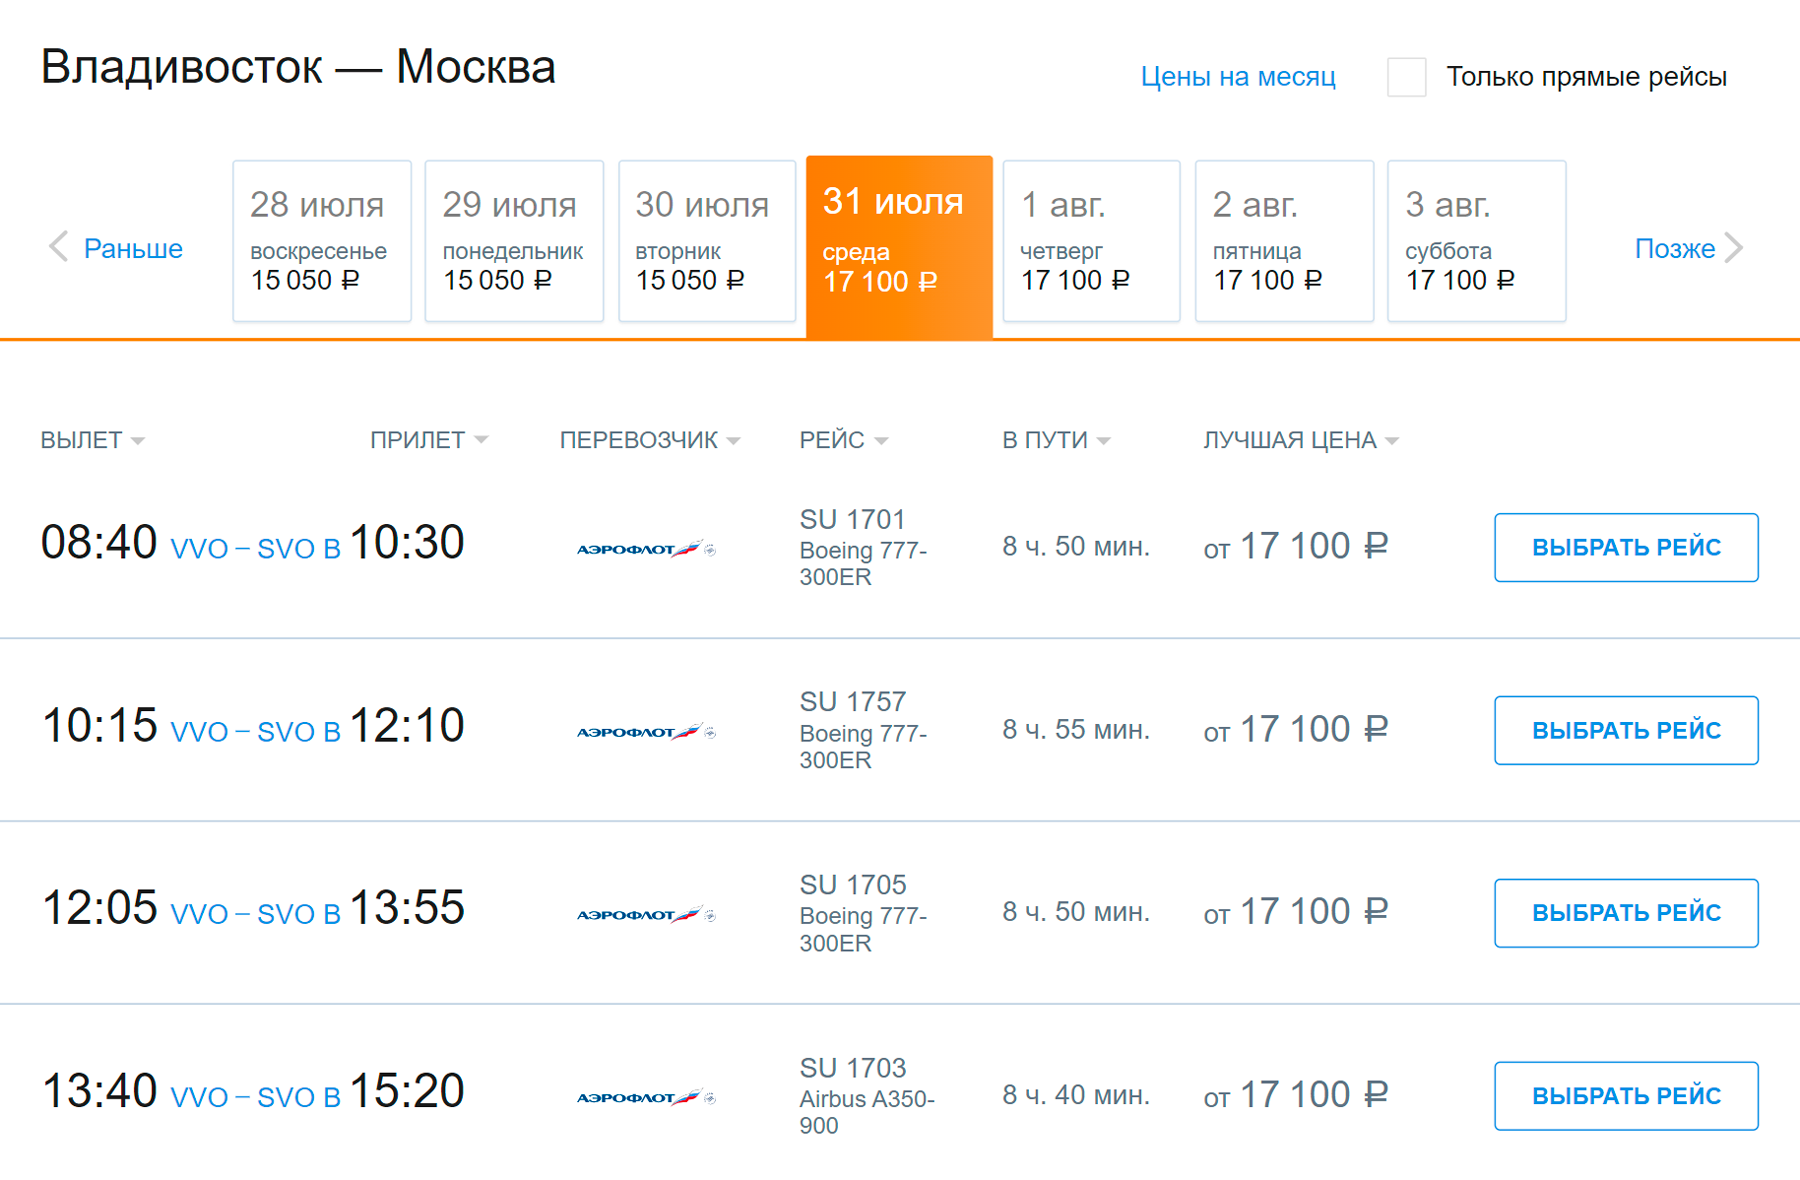 Обычный билет Владивосток — Москва у «Аэрофлота» стоит 17 100 ₽. Источник: aeroflot.ru